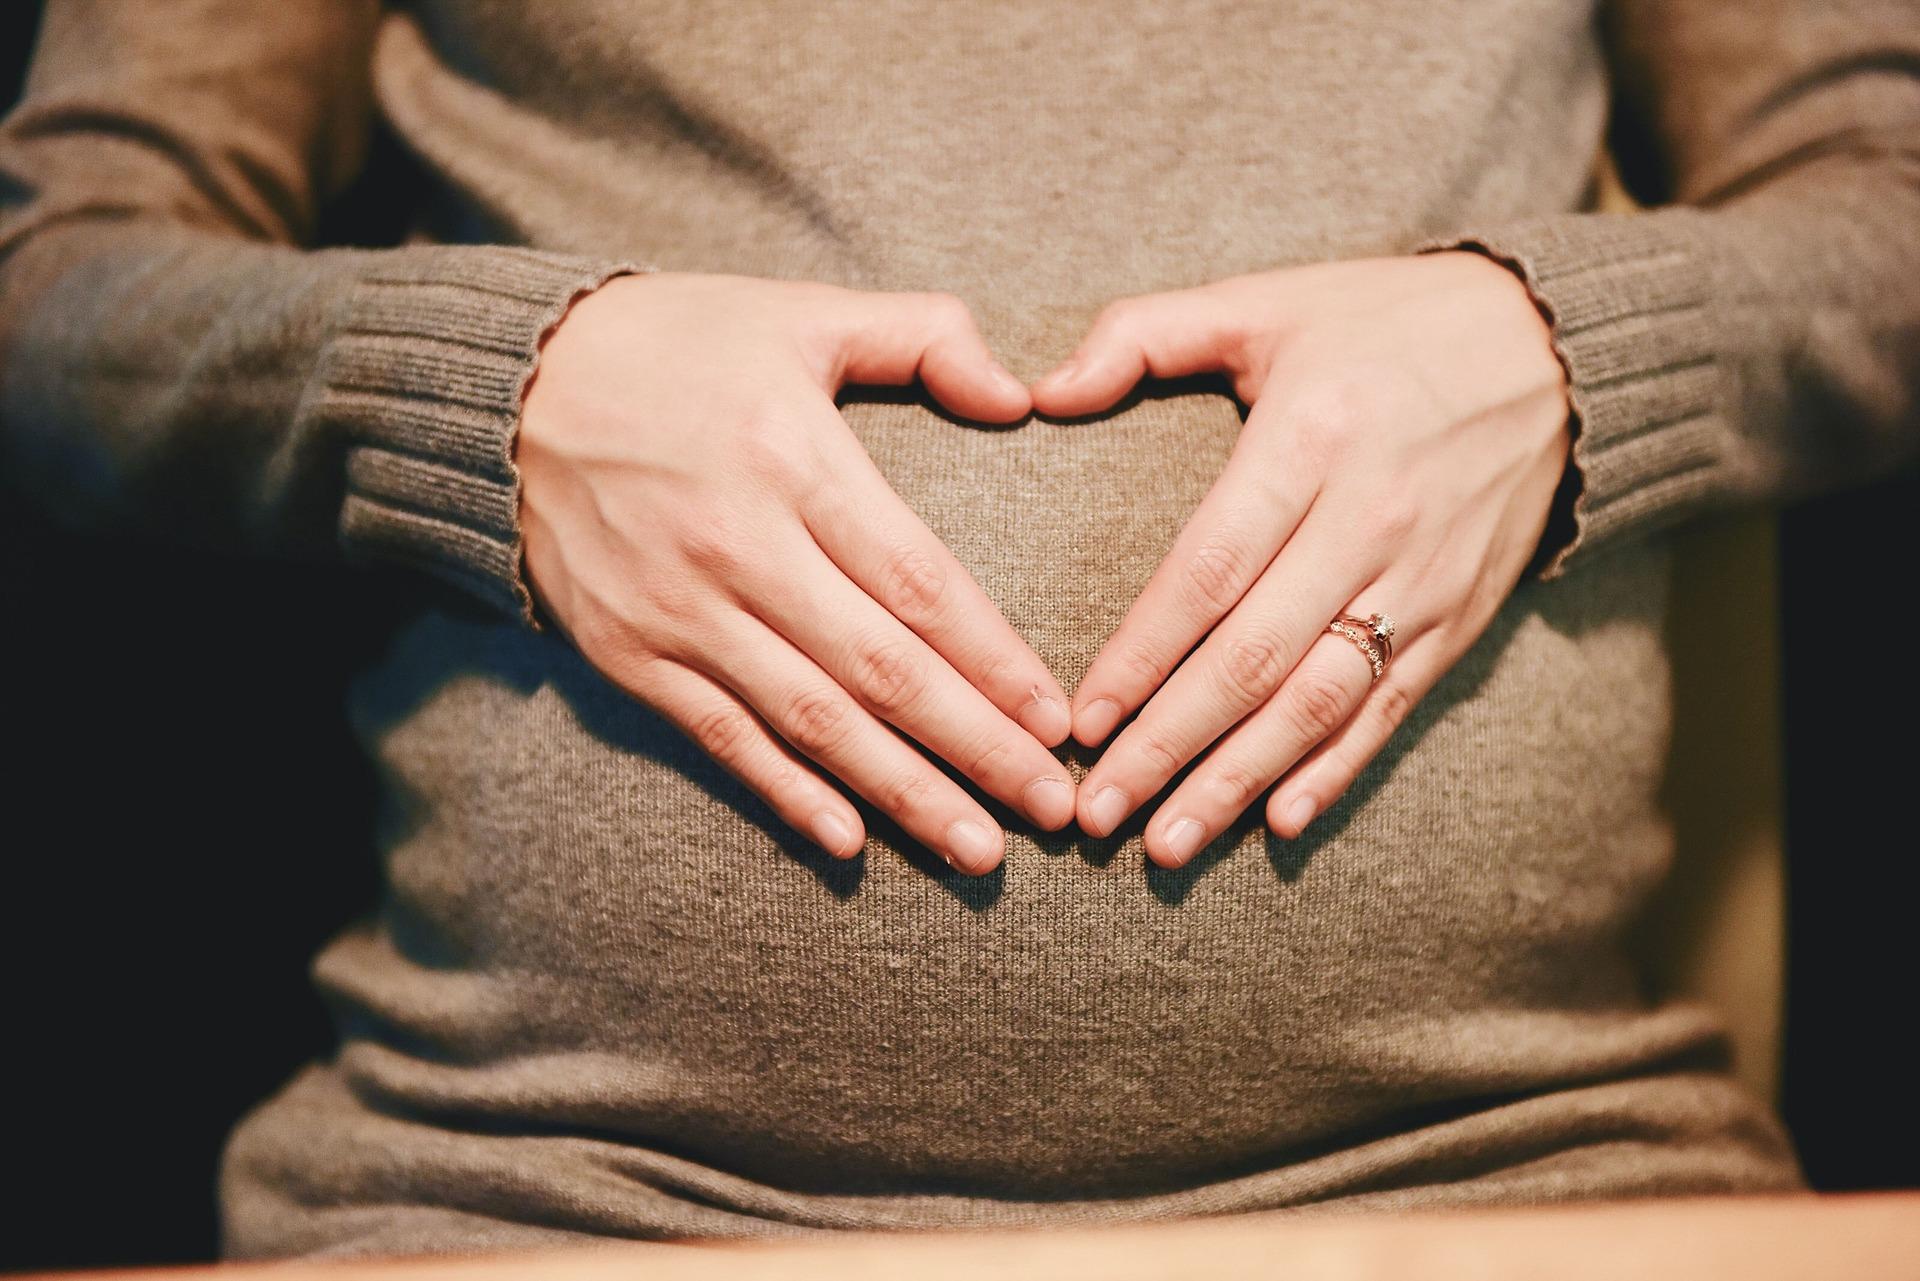 Una mujer embarazada. Fuente: Pixabay.